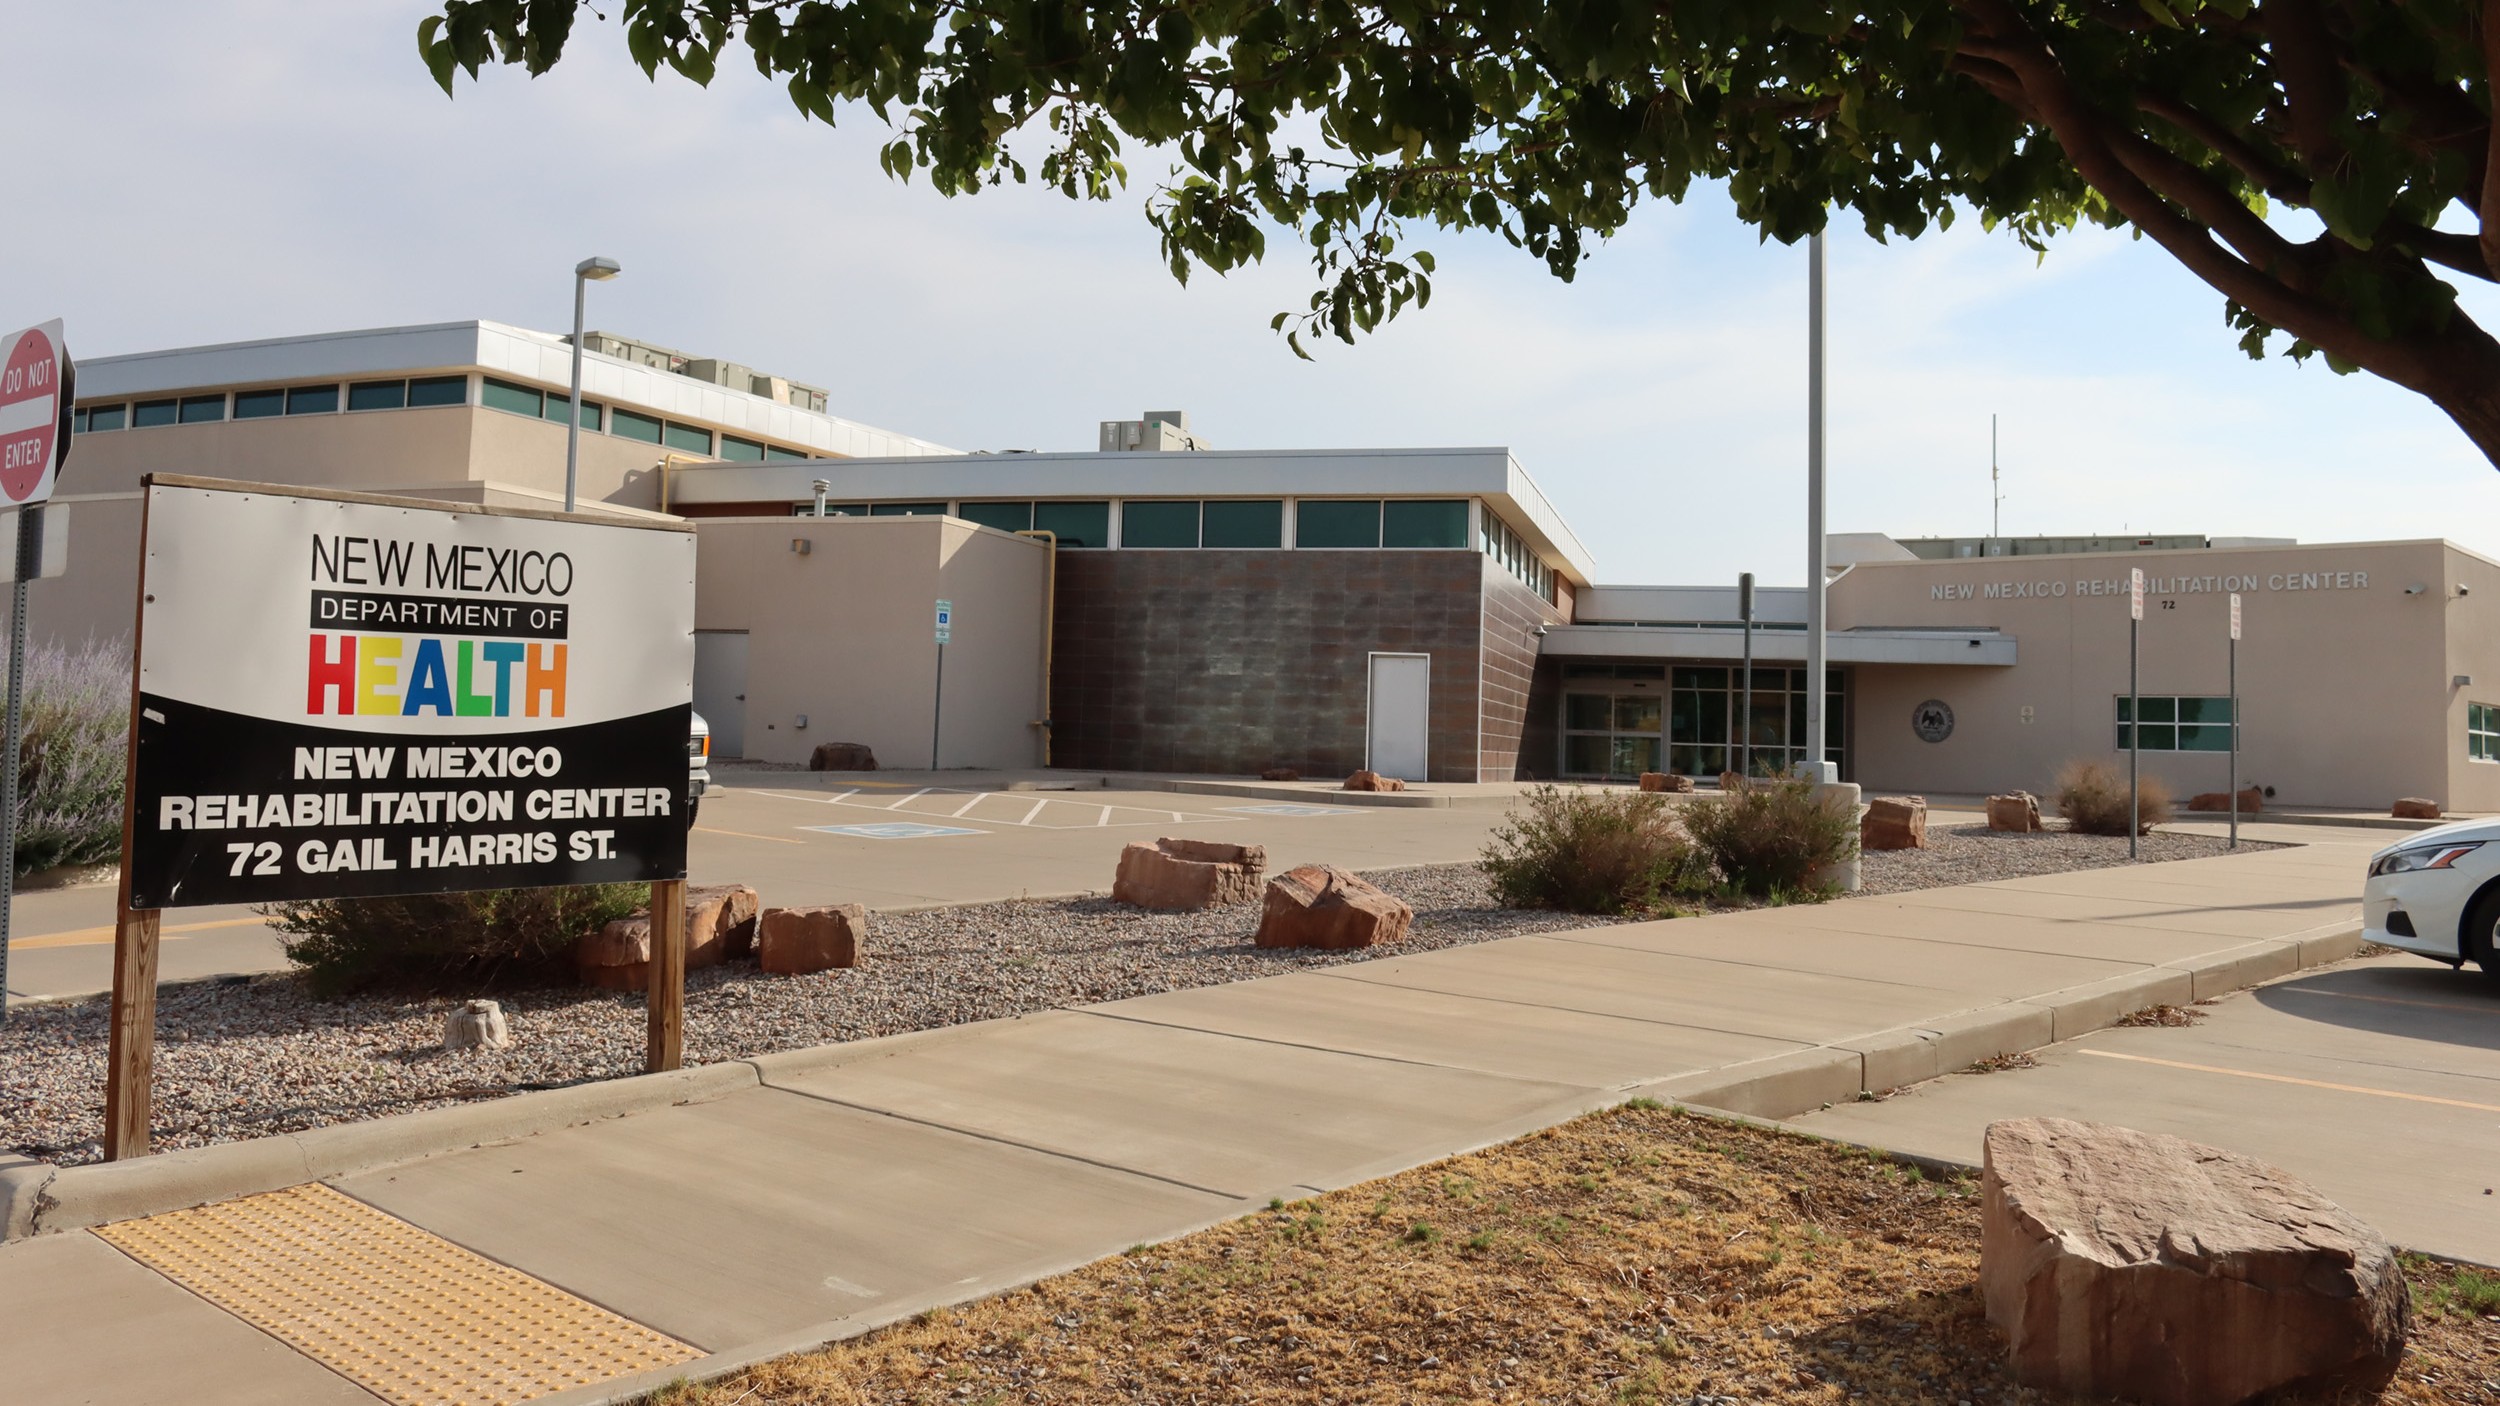 New Mexico Rehabilitation Center NM 88203